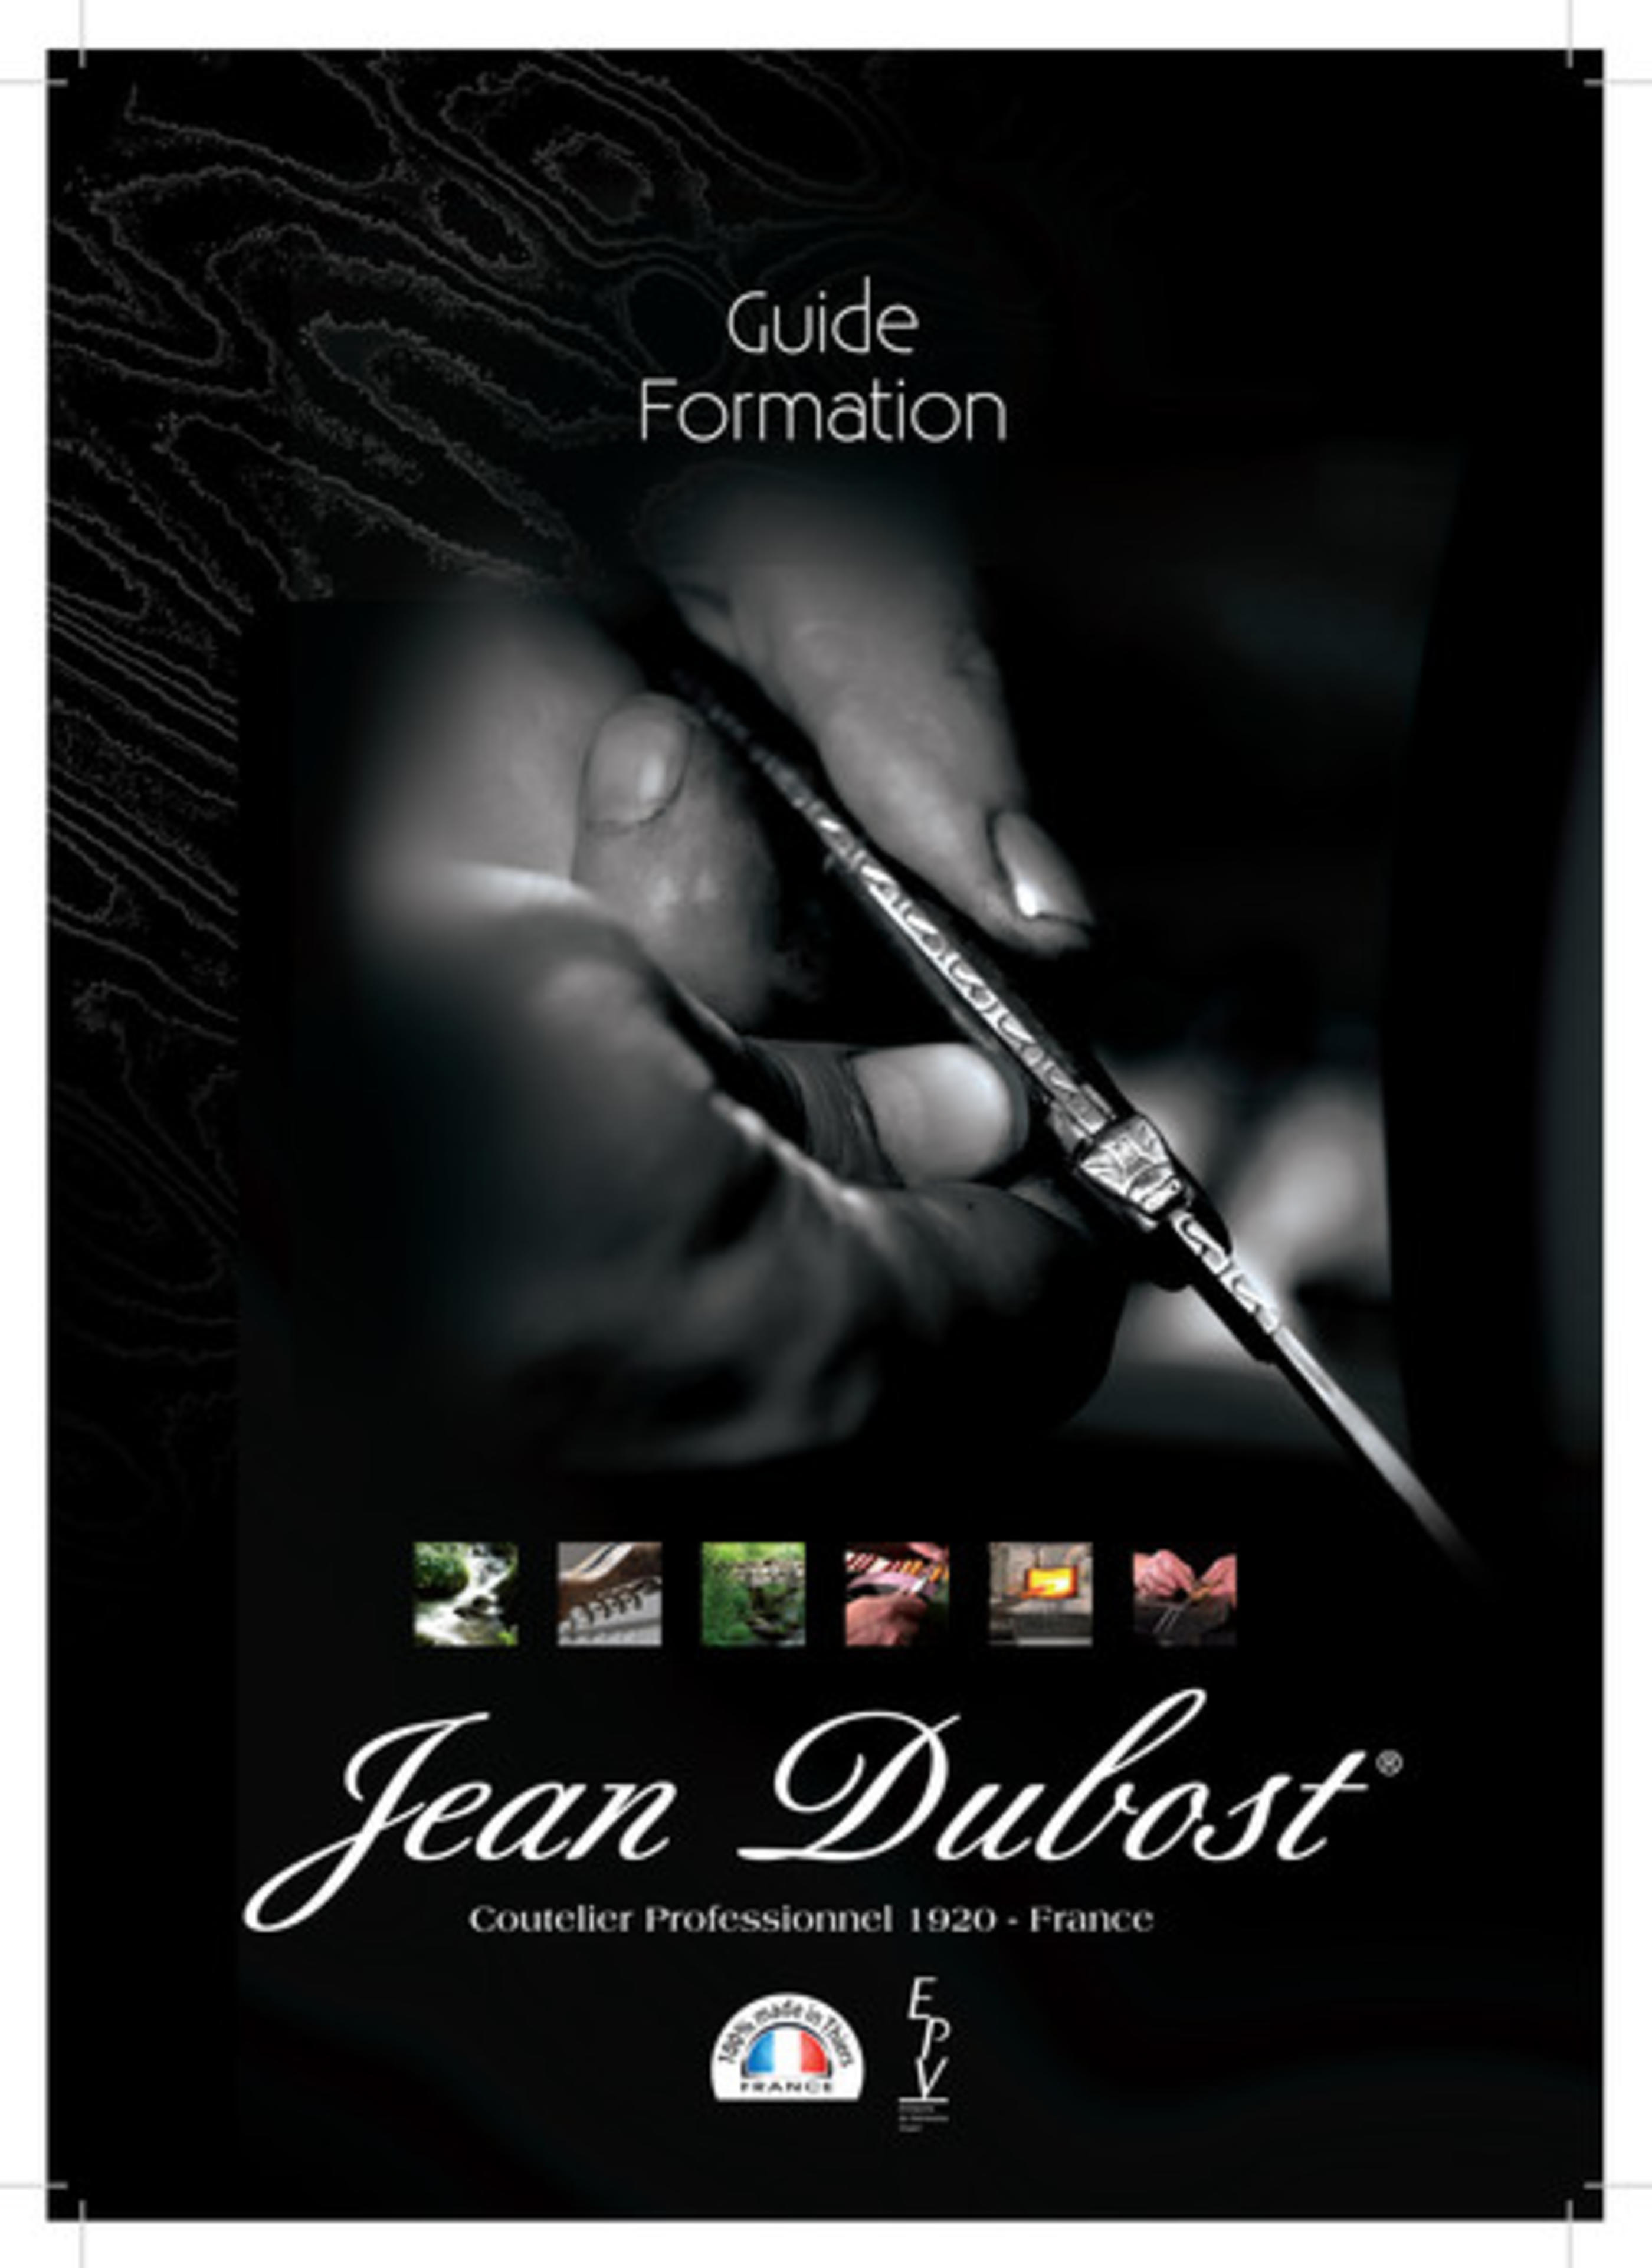 Le guide formation Jean Dubost : la transmission de notre savoir-faire